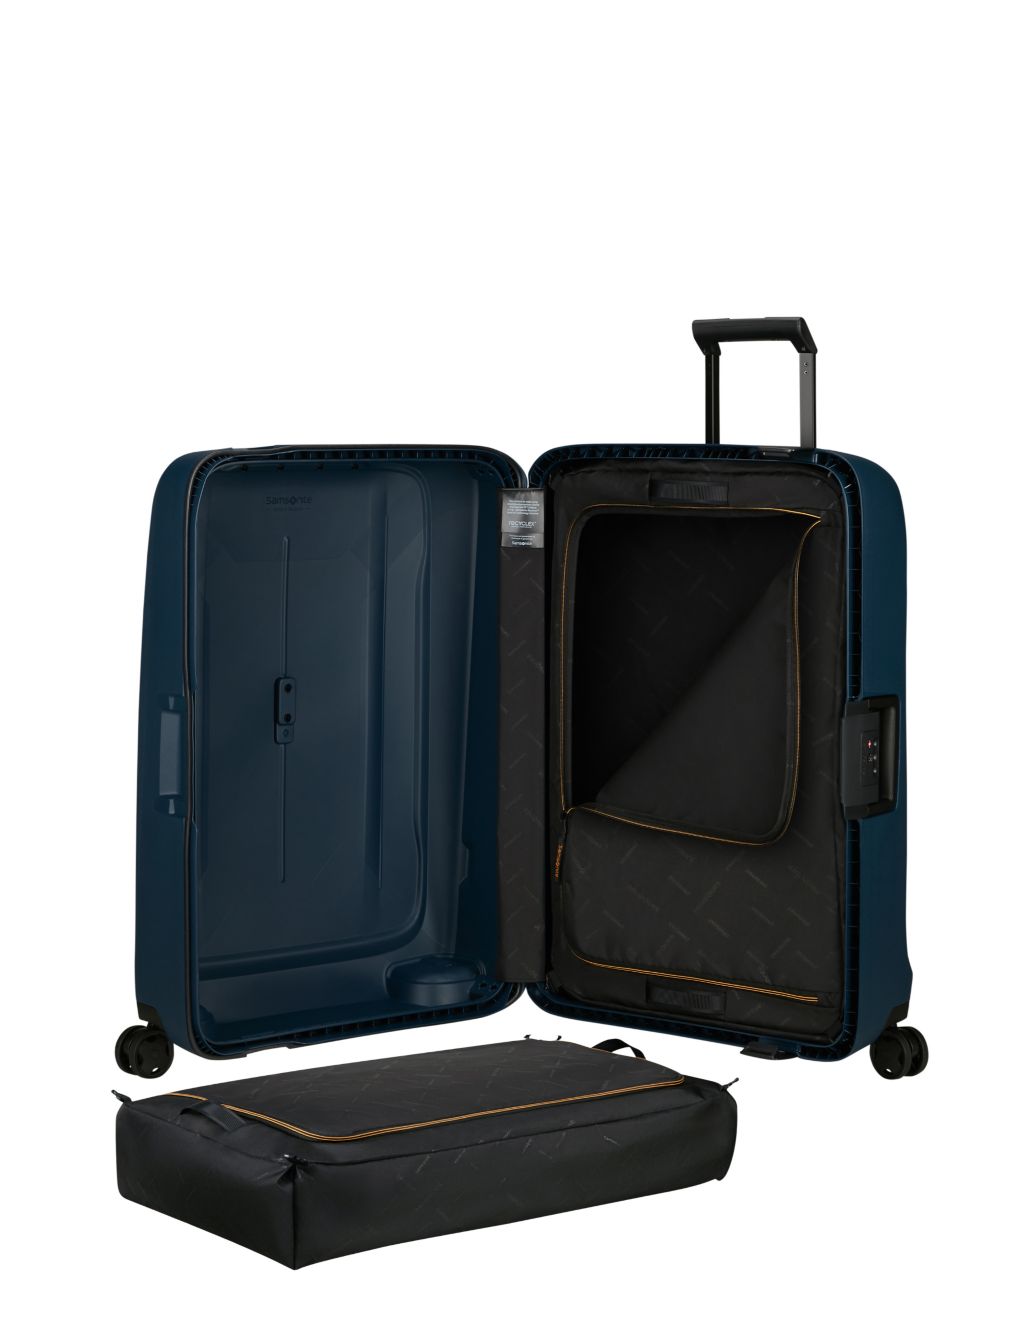 Essens 4 Wheel Hard Shell Large Suitcase image 4